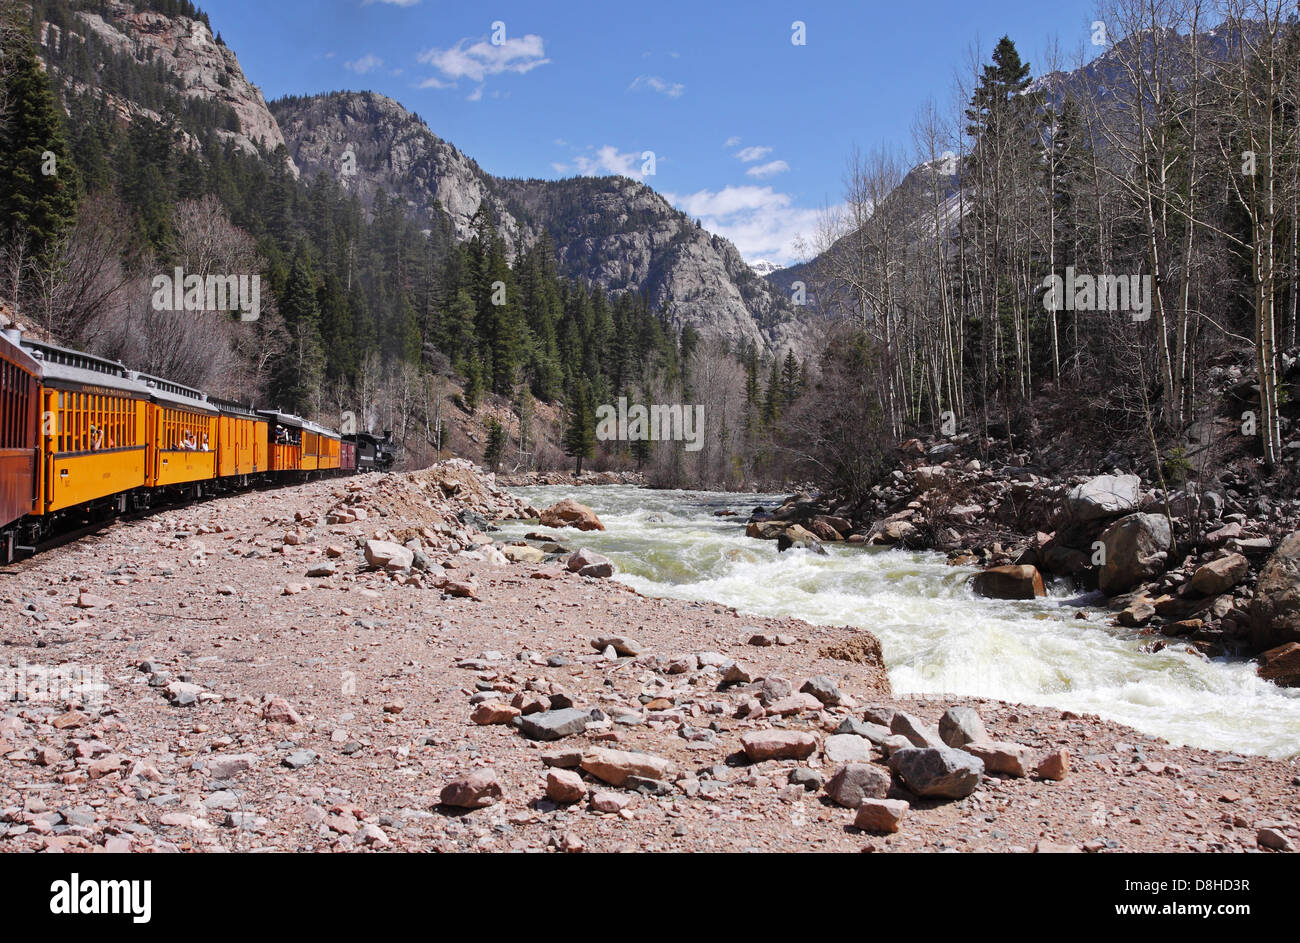 The Durango to Silverton  Locomotive steaming along the Animas River towards Silverton Stock Photo